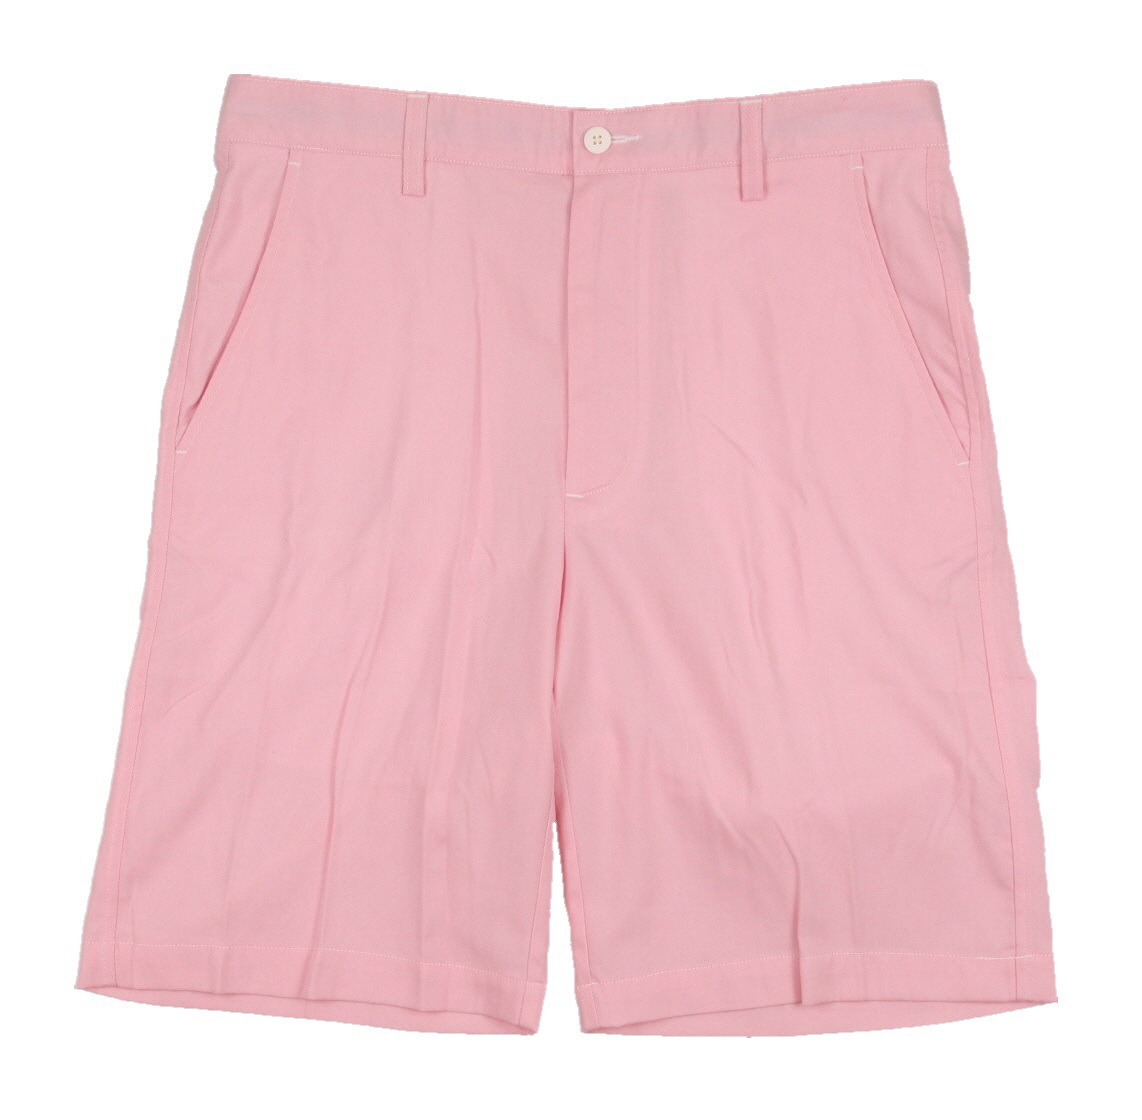 NEW MEN'S Footjoy Golf Shorts Pink White Size 32W | eBay